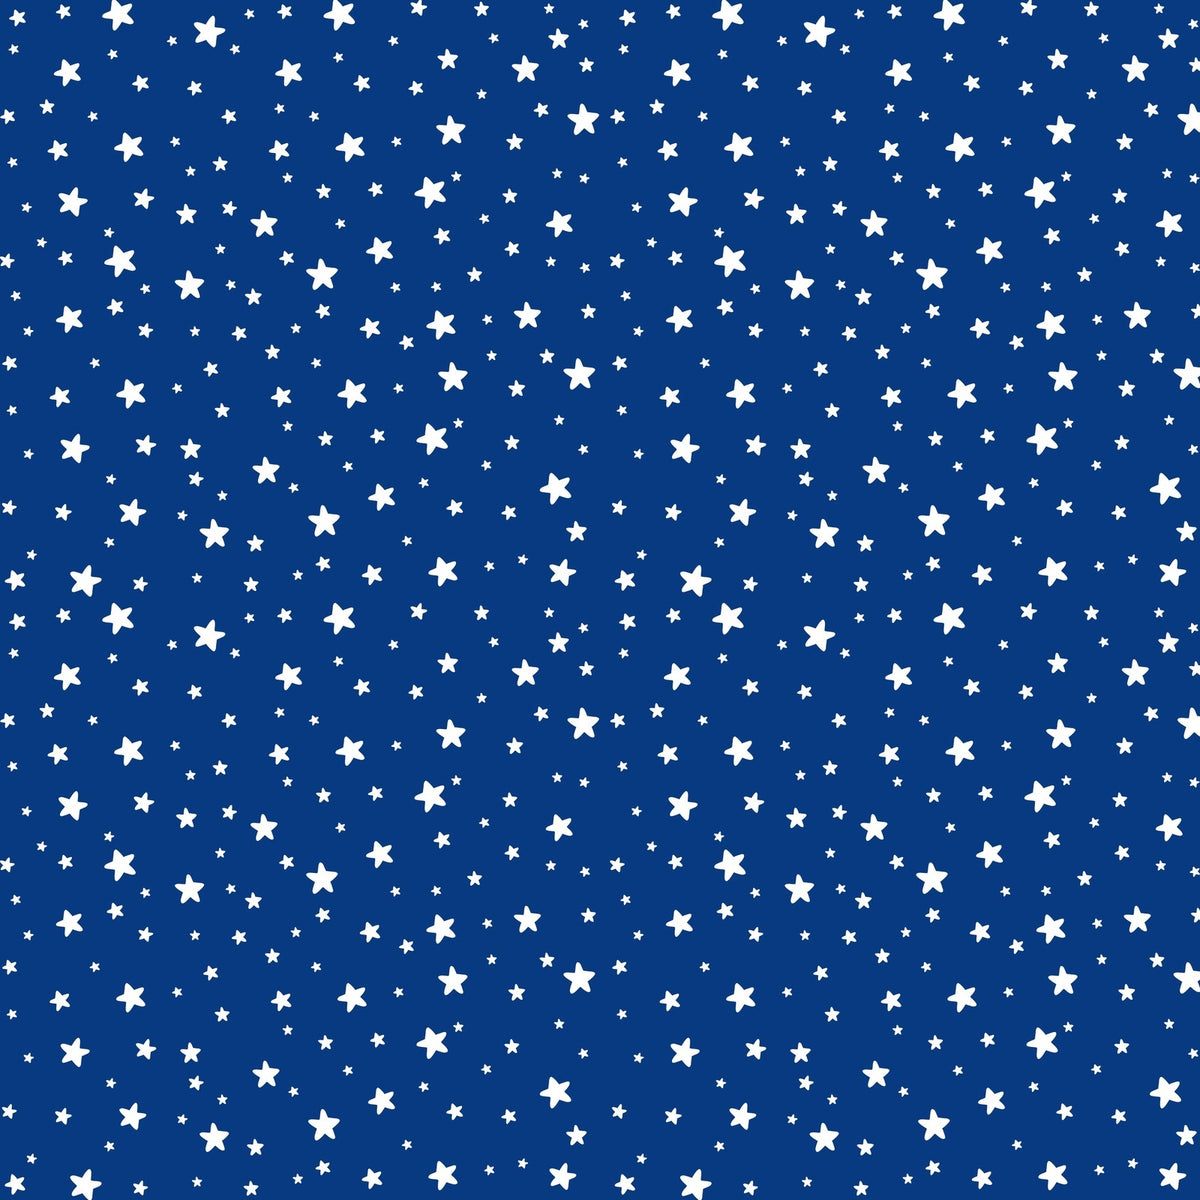 Starlight Jewel Re-Mixed 6x6 Paper Pad